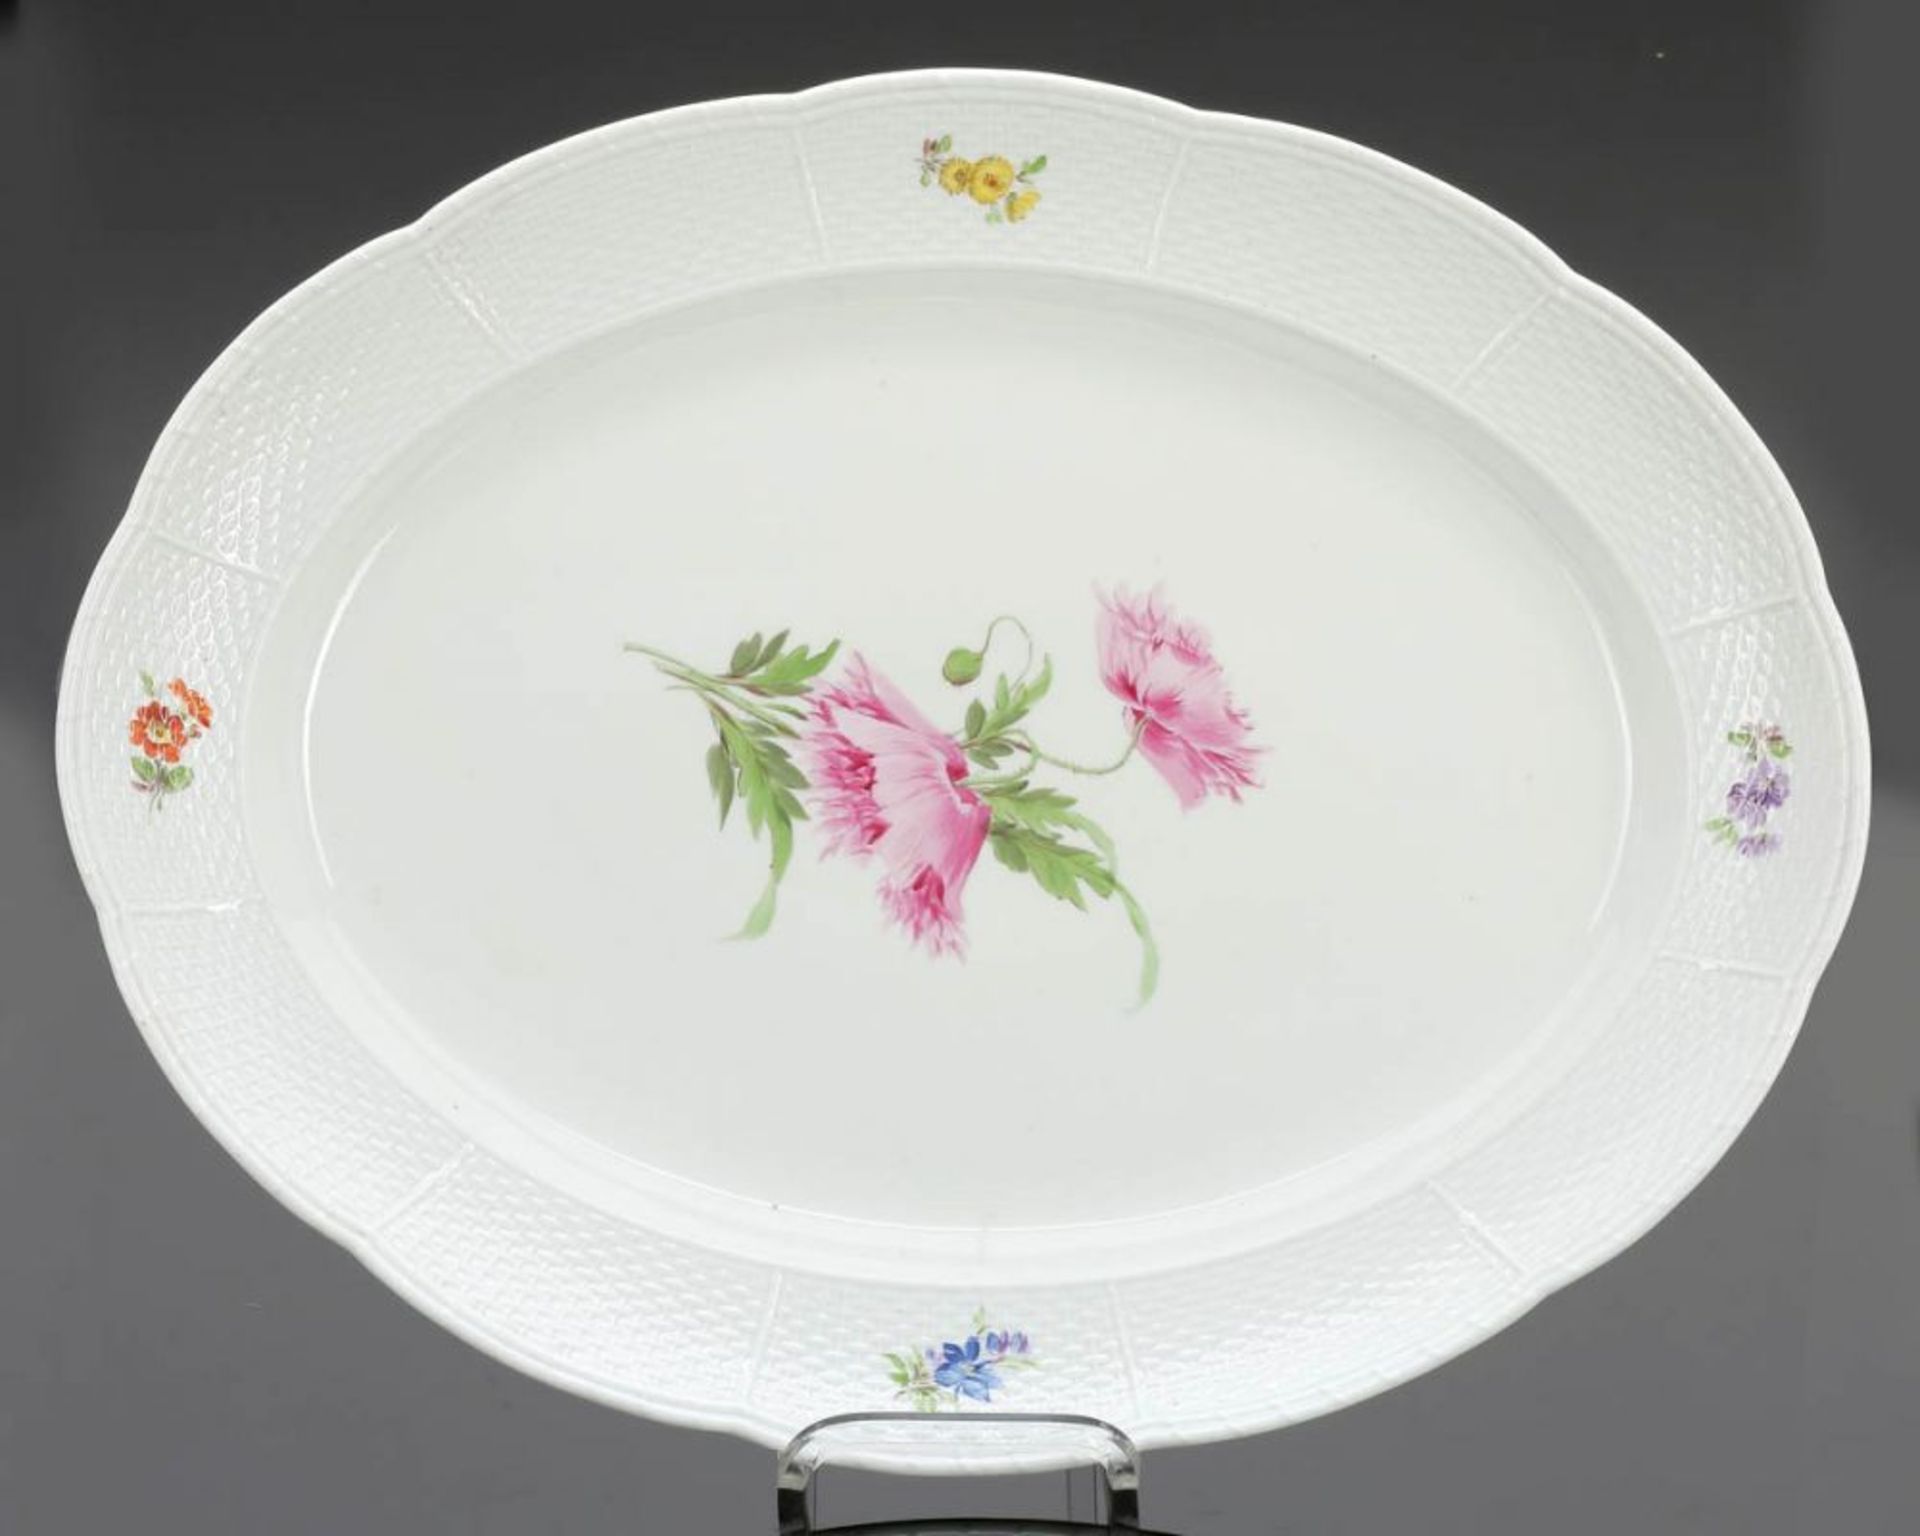 Platte Königliche Porzellan Manufaktur, Meissen um 1850. - Altozier: Blume - Porzellan, weiß,